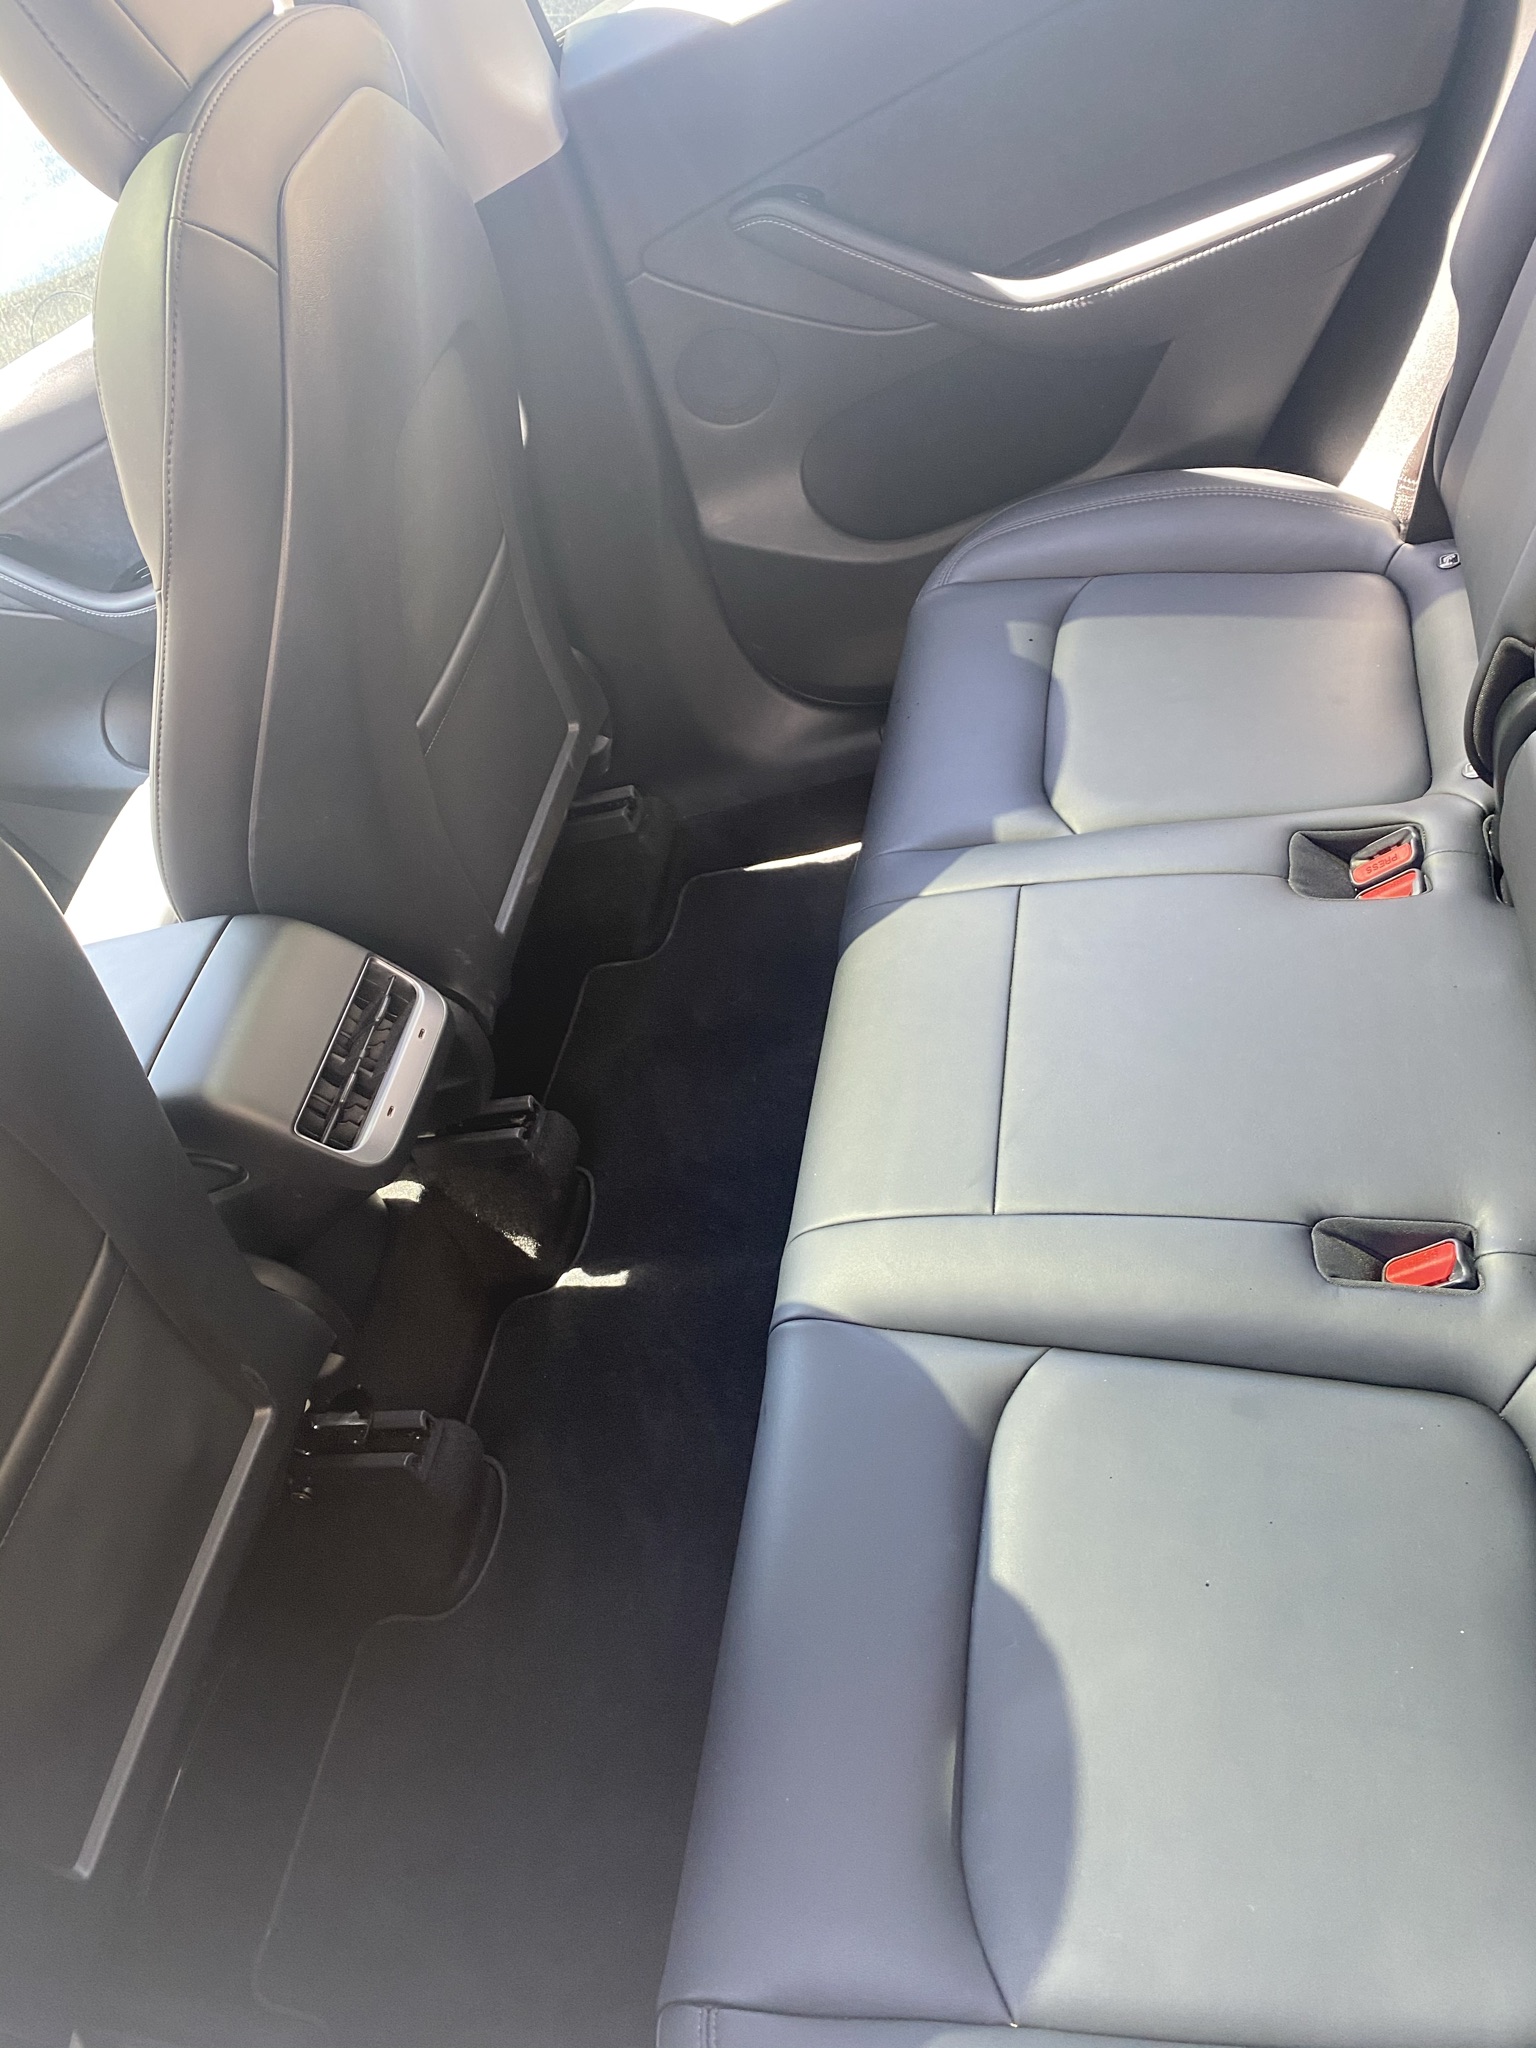 Tesla model 3 after detail backseat